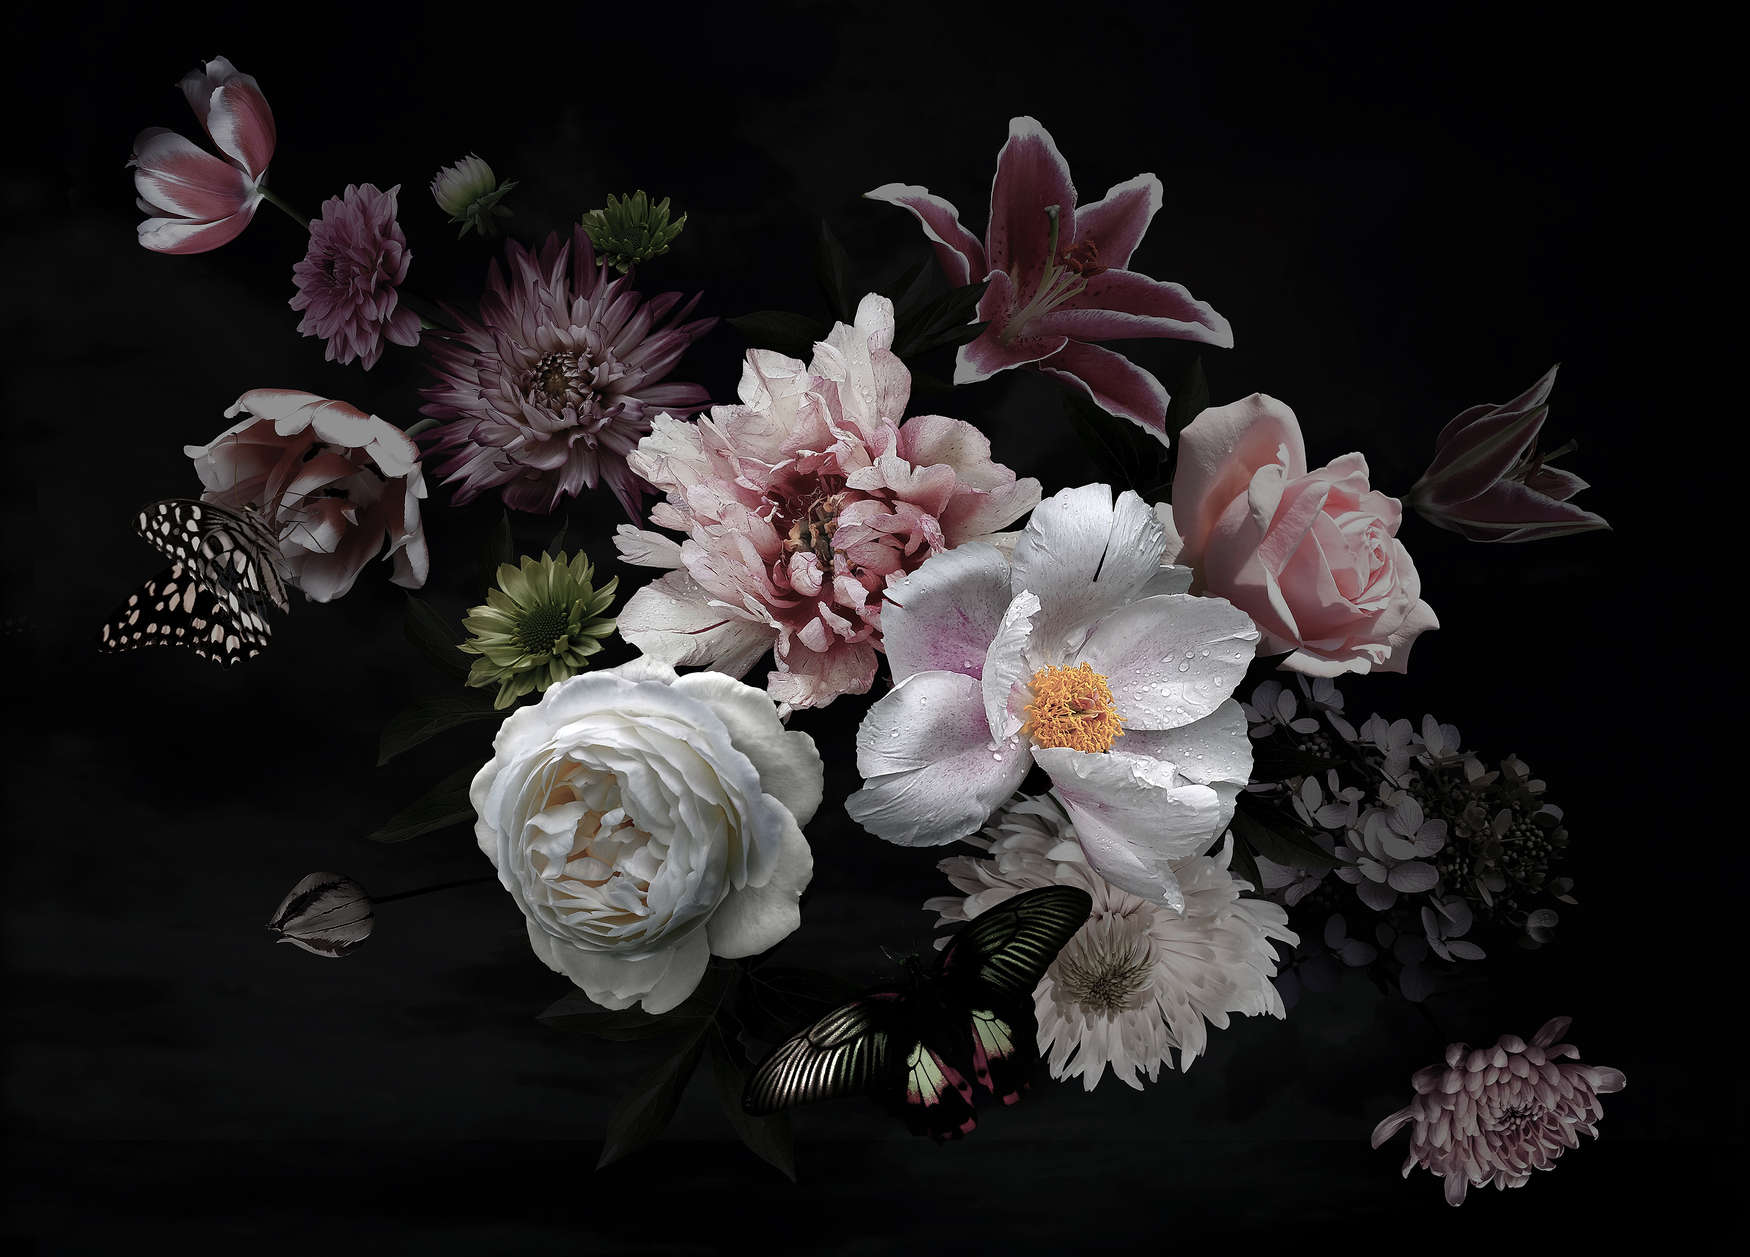             Fototapete verschiedene Blumen mit Schmetterling – Schwarz, Rosa, Weiß
        